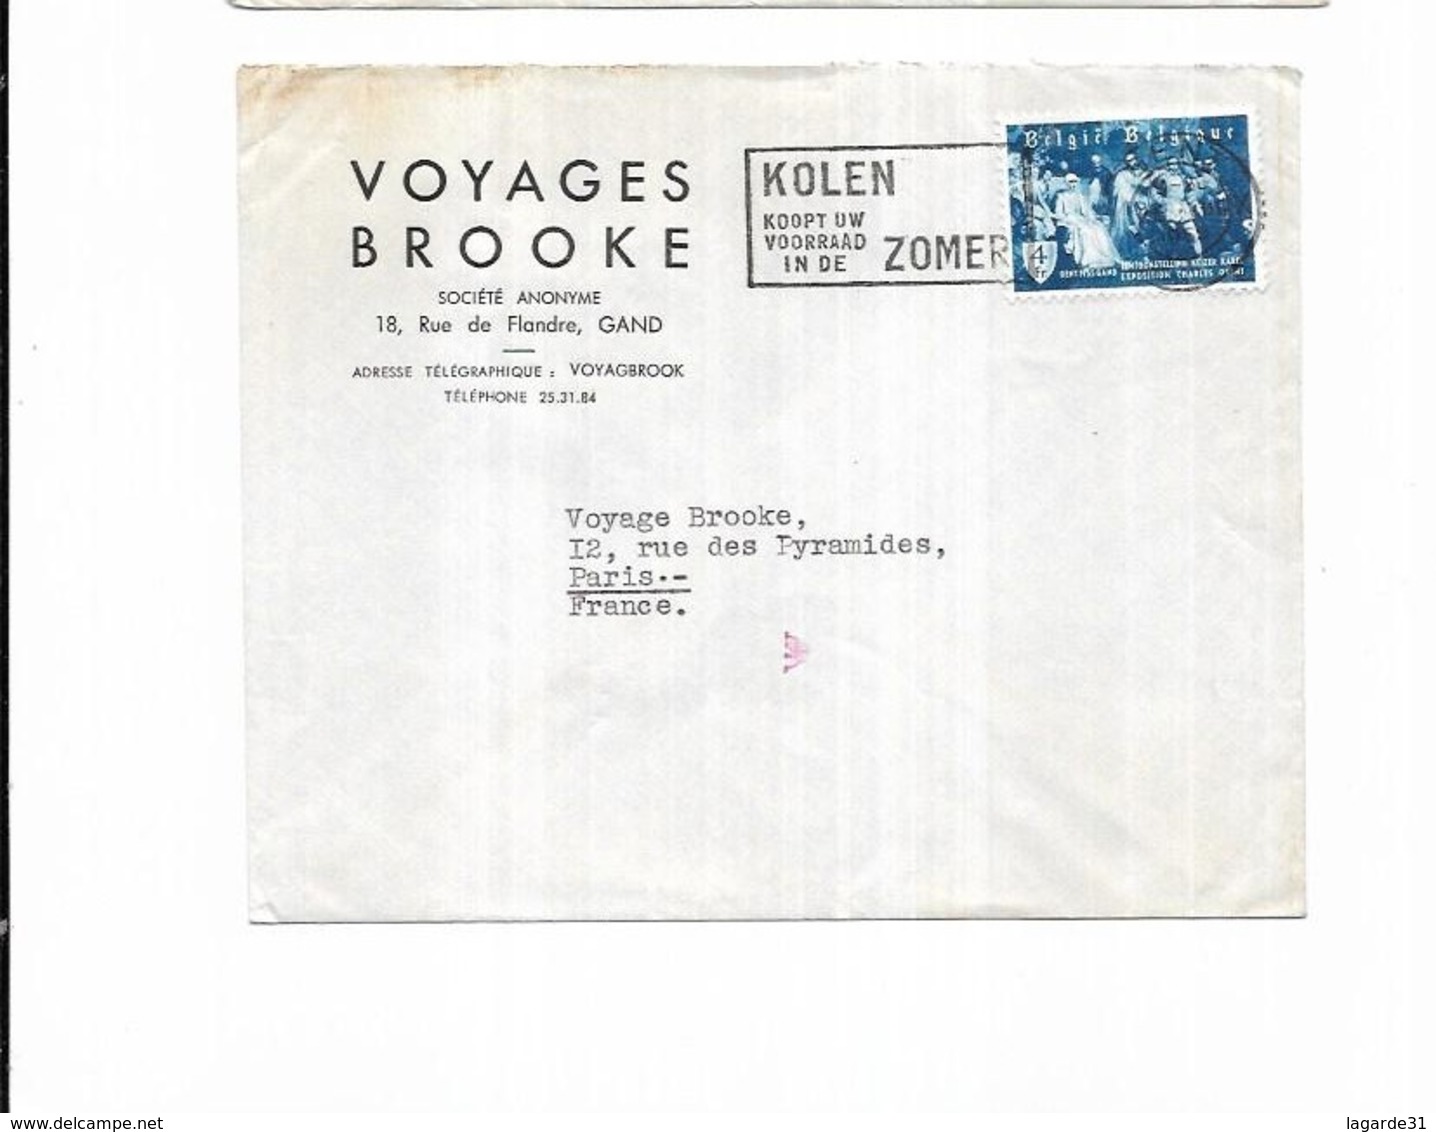 1955 Belgique Voyages Brooke Gand KOLEN KOOPT UW VOORRAAD IN DE ZOMER - Werbestempel